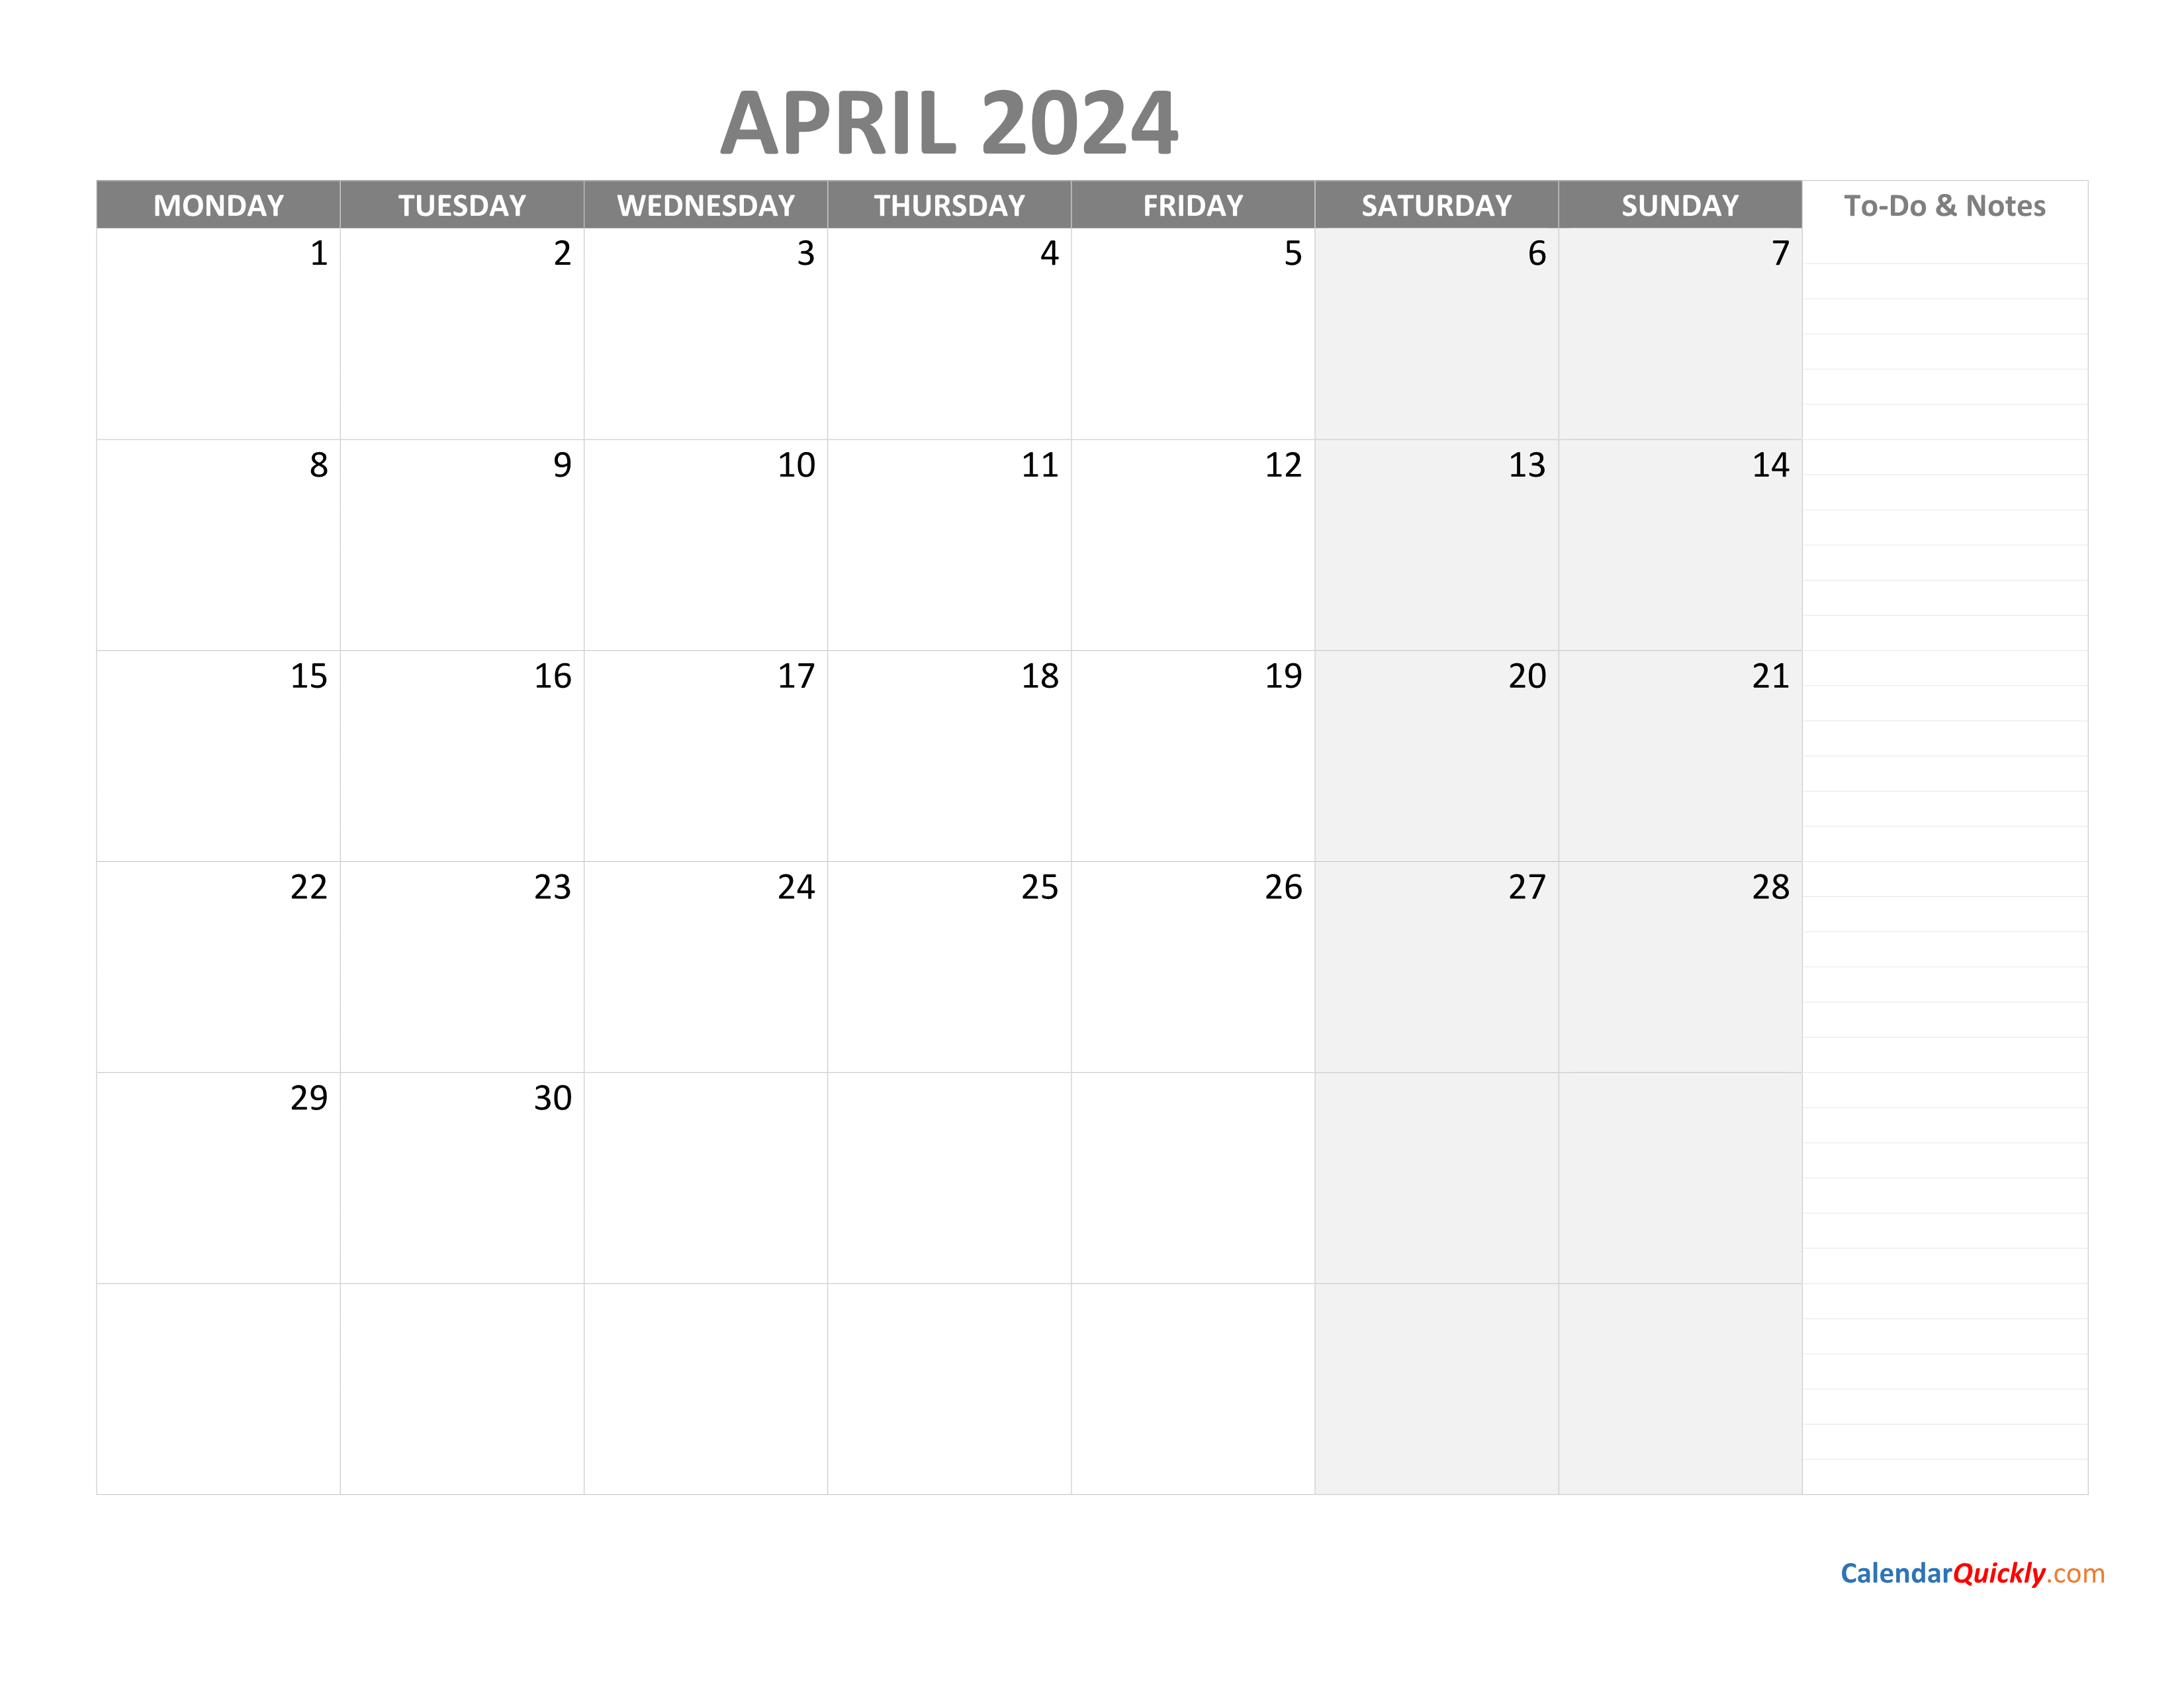 Календарь 2024. Календарь 2024 для заметок. April 2024 календарь. Календарь February 2024. Денежный лунный календарь на апрель 2024 года